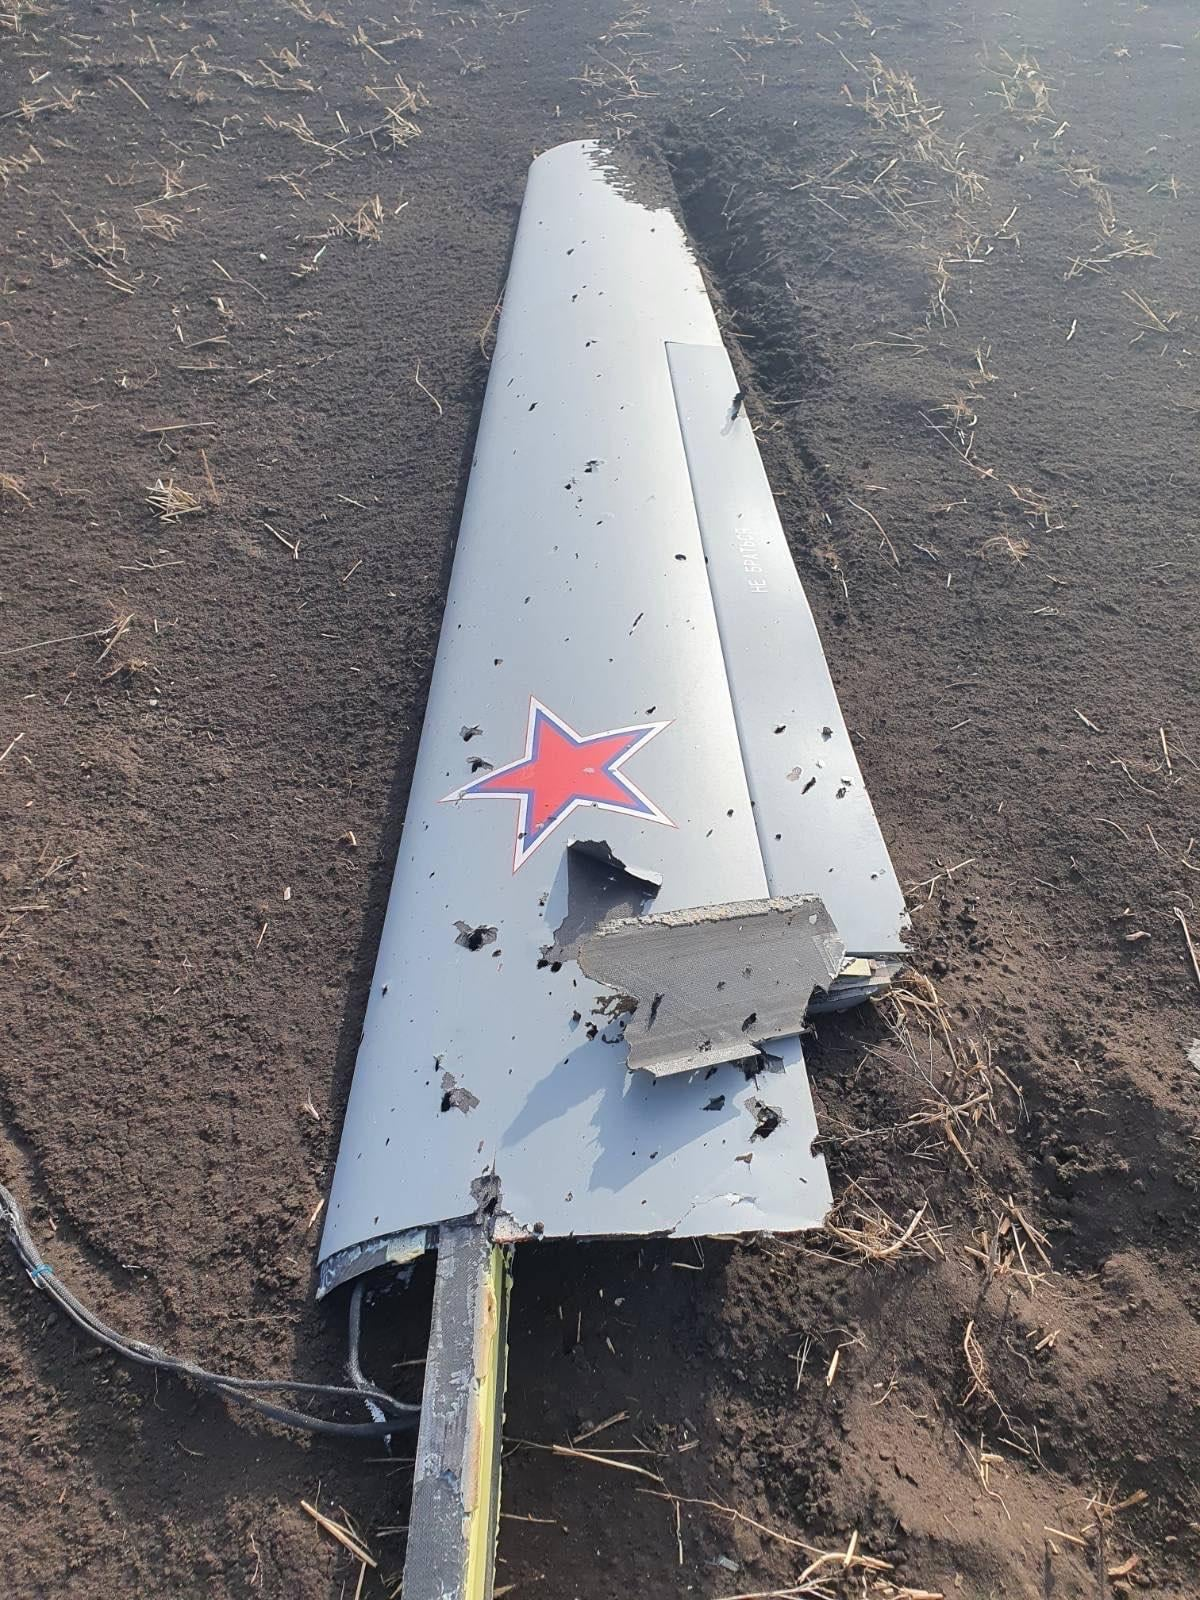 乌克兰击落俄军新型“猎户座”无人机 残骸照片曝光